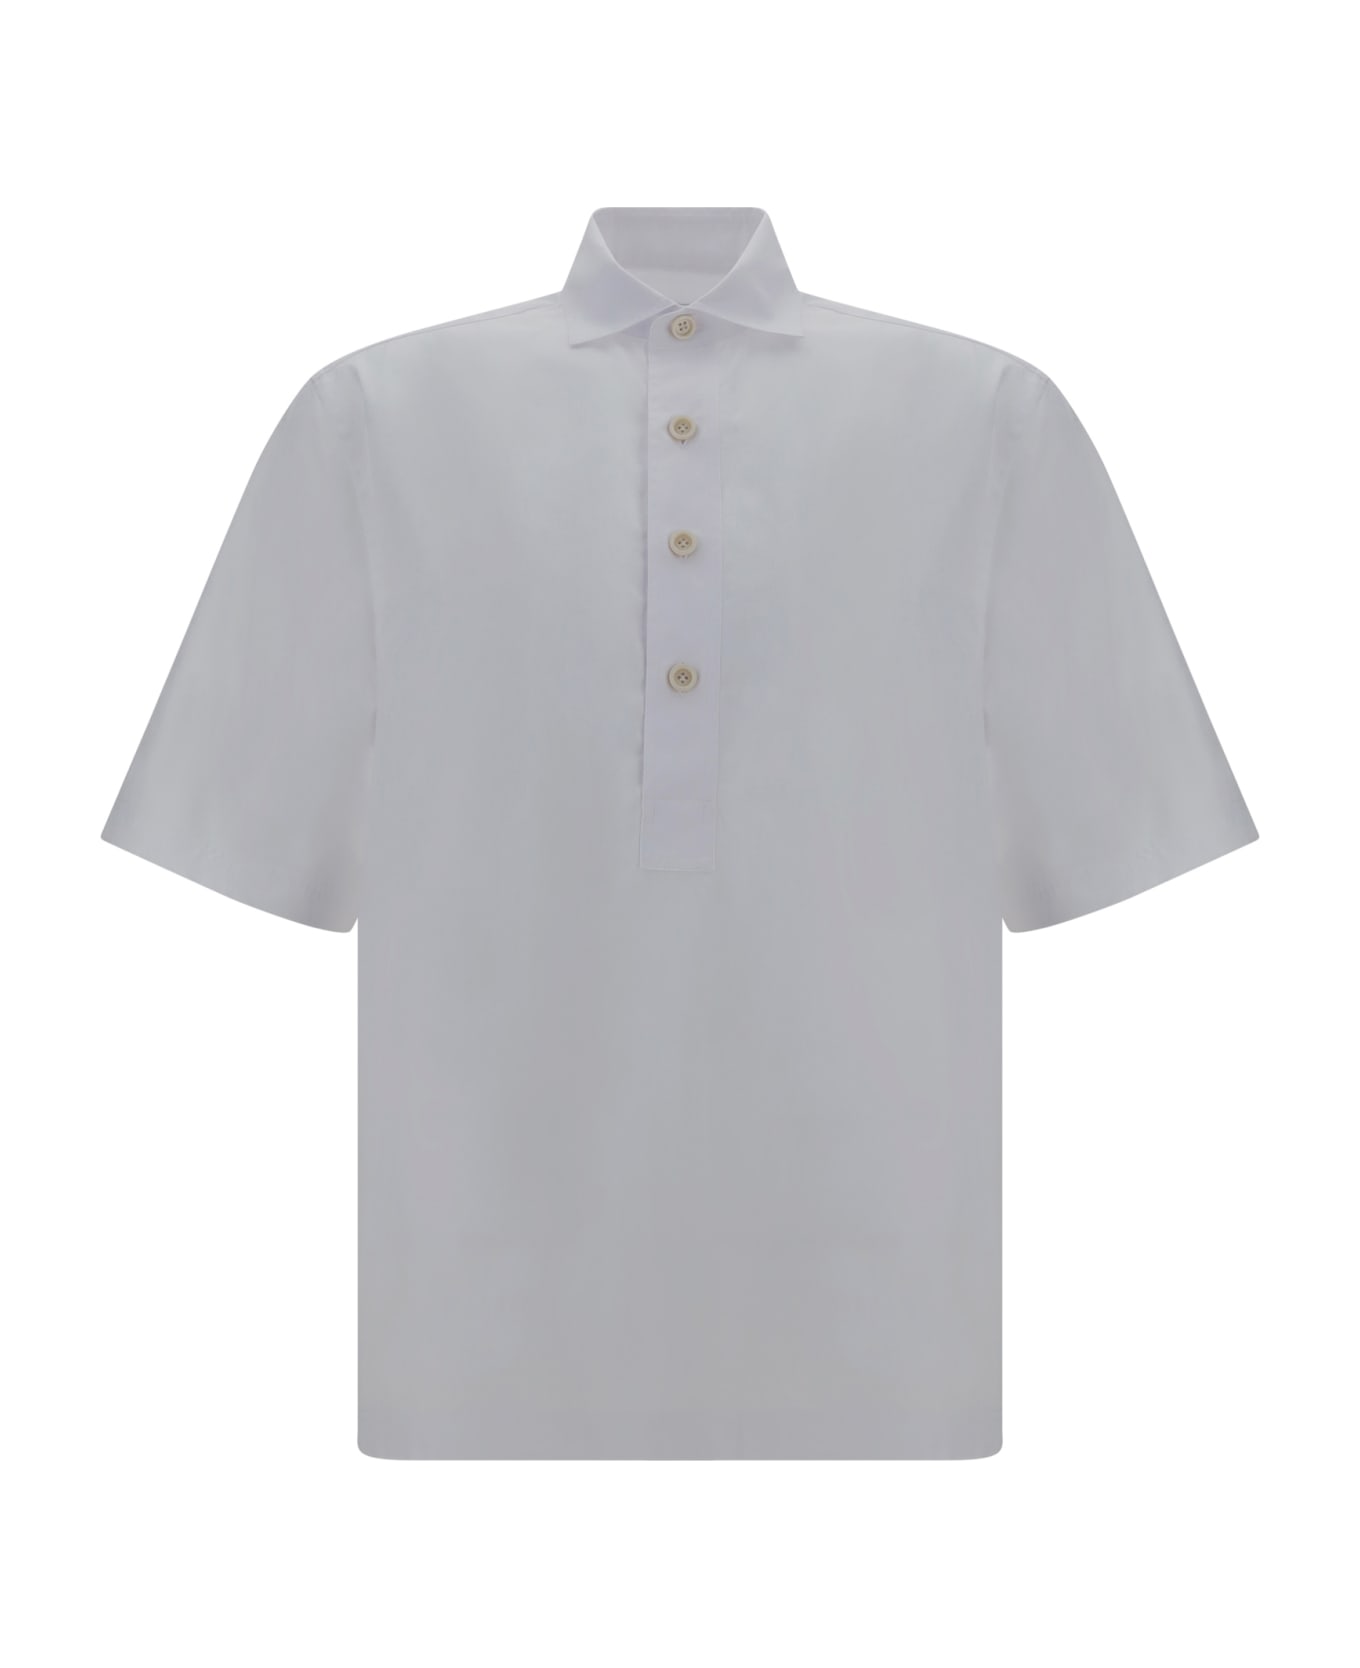 Lardini Shirt - White シャツ